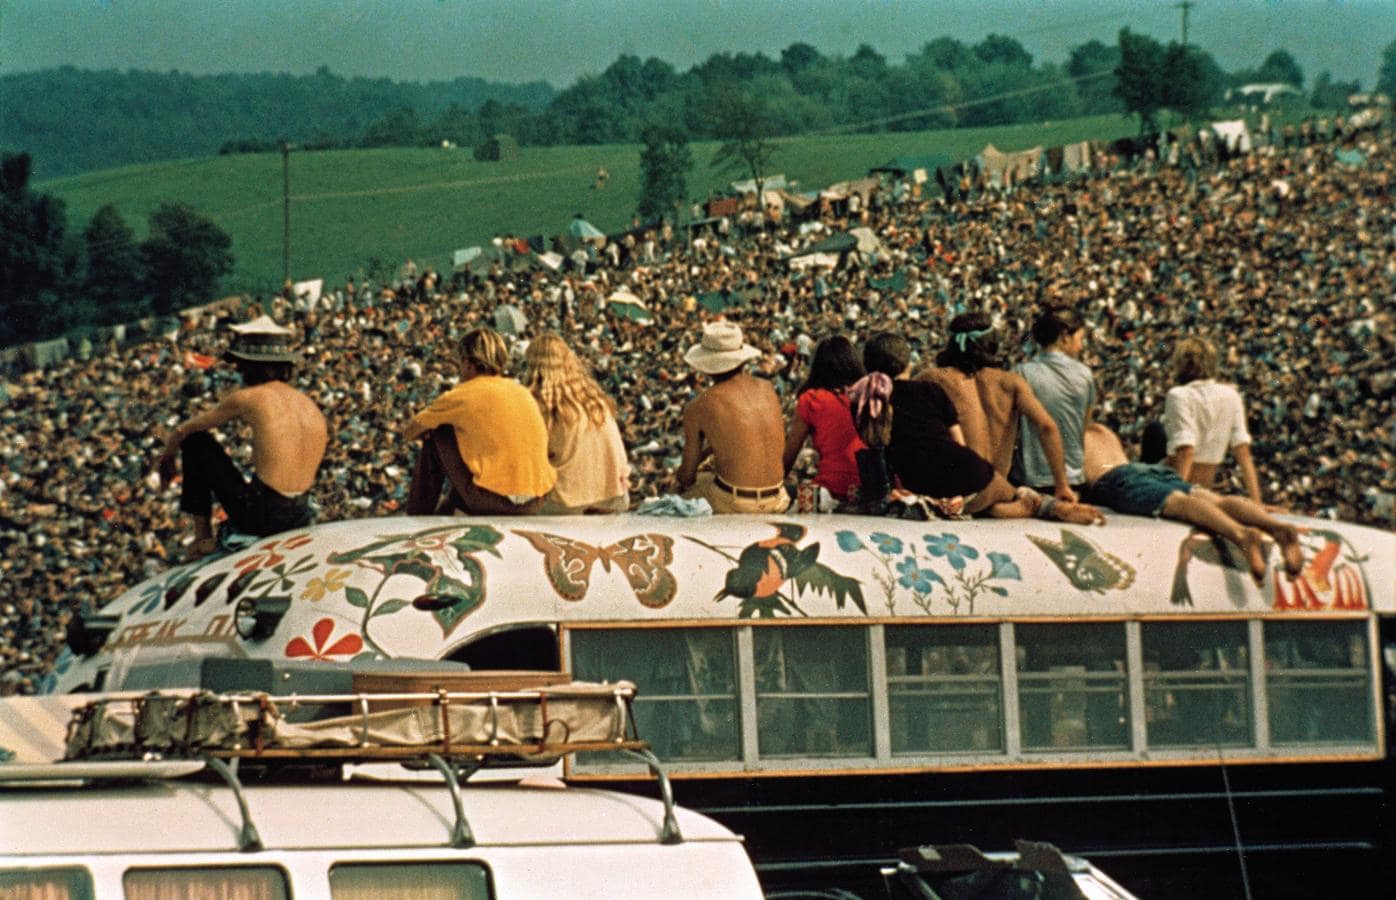 Repasamos algunas de las fotos más icónicas del mítico festival de 1969, uno de los hitos de la cultura del siglo XX. En la imagen, el bus que se hizo mítico gracias al documental «Woodstock: 3 días de paz y música», que se estrenó en 1970. 